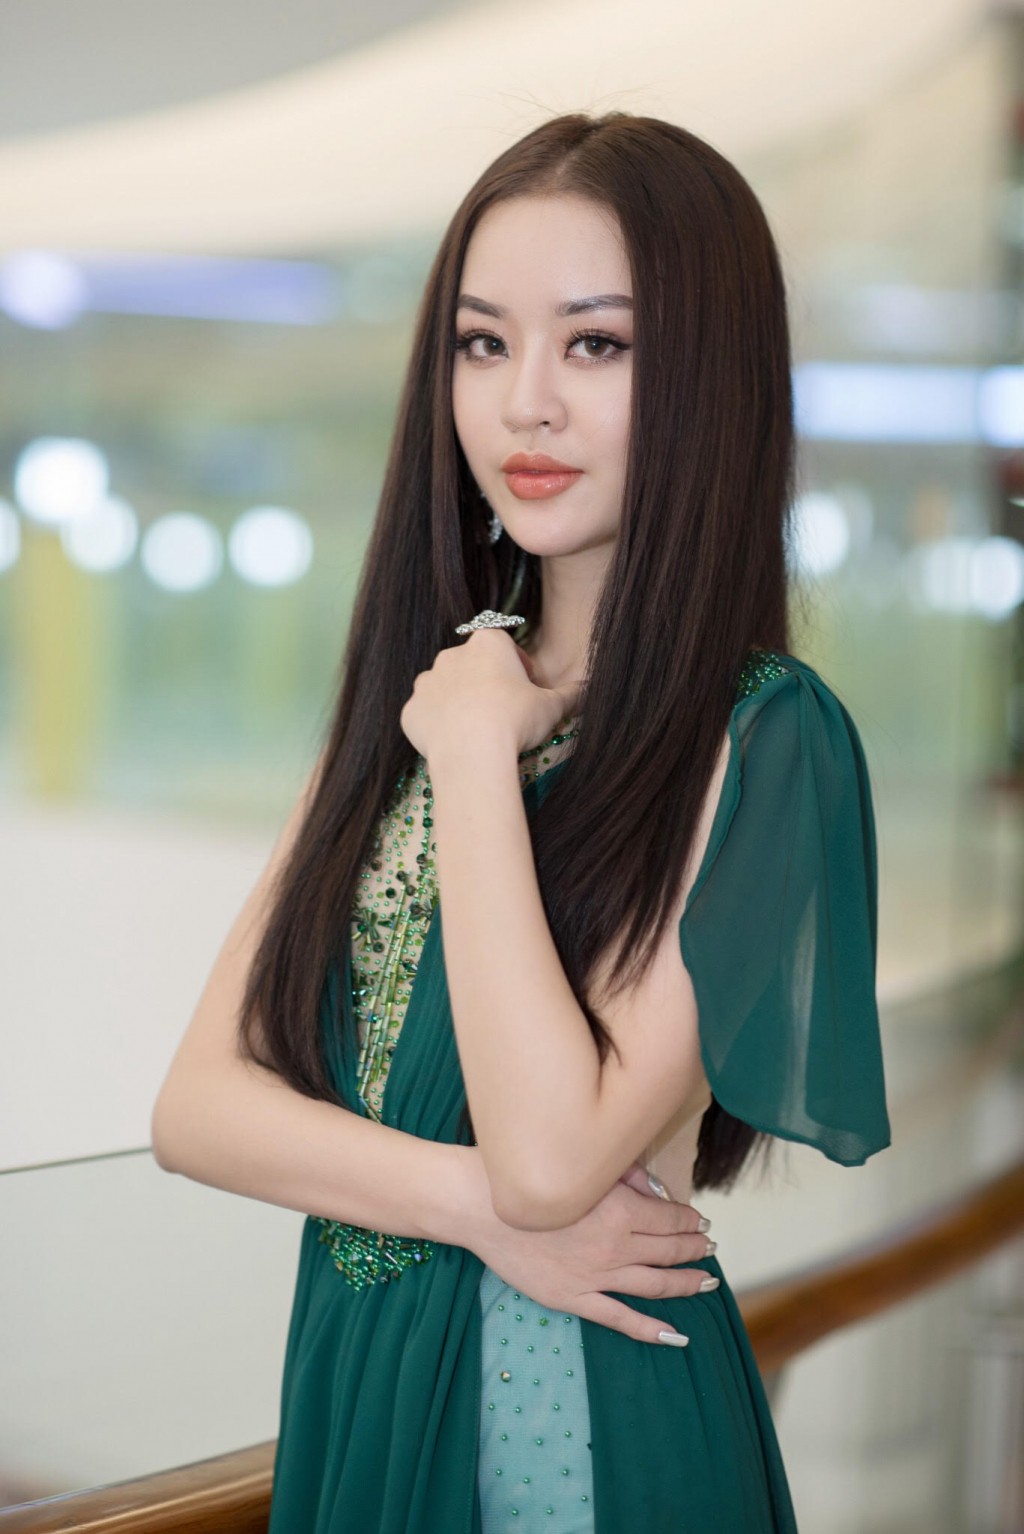 Nhan sắc Hoa hậu giỏi võ liên tục dự đoán chính xác tỷ số các trận cầu của đội tuyển Việt Nam - Ảnh 10.